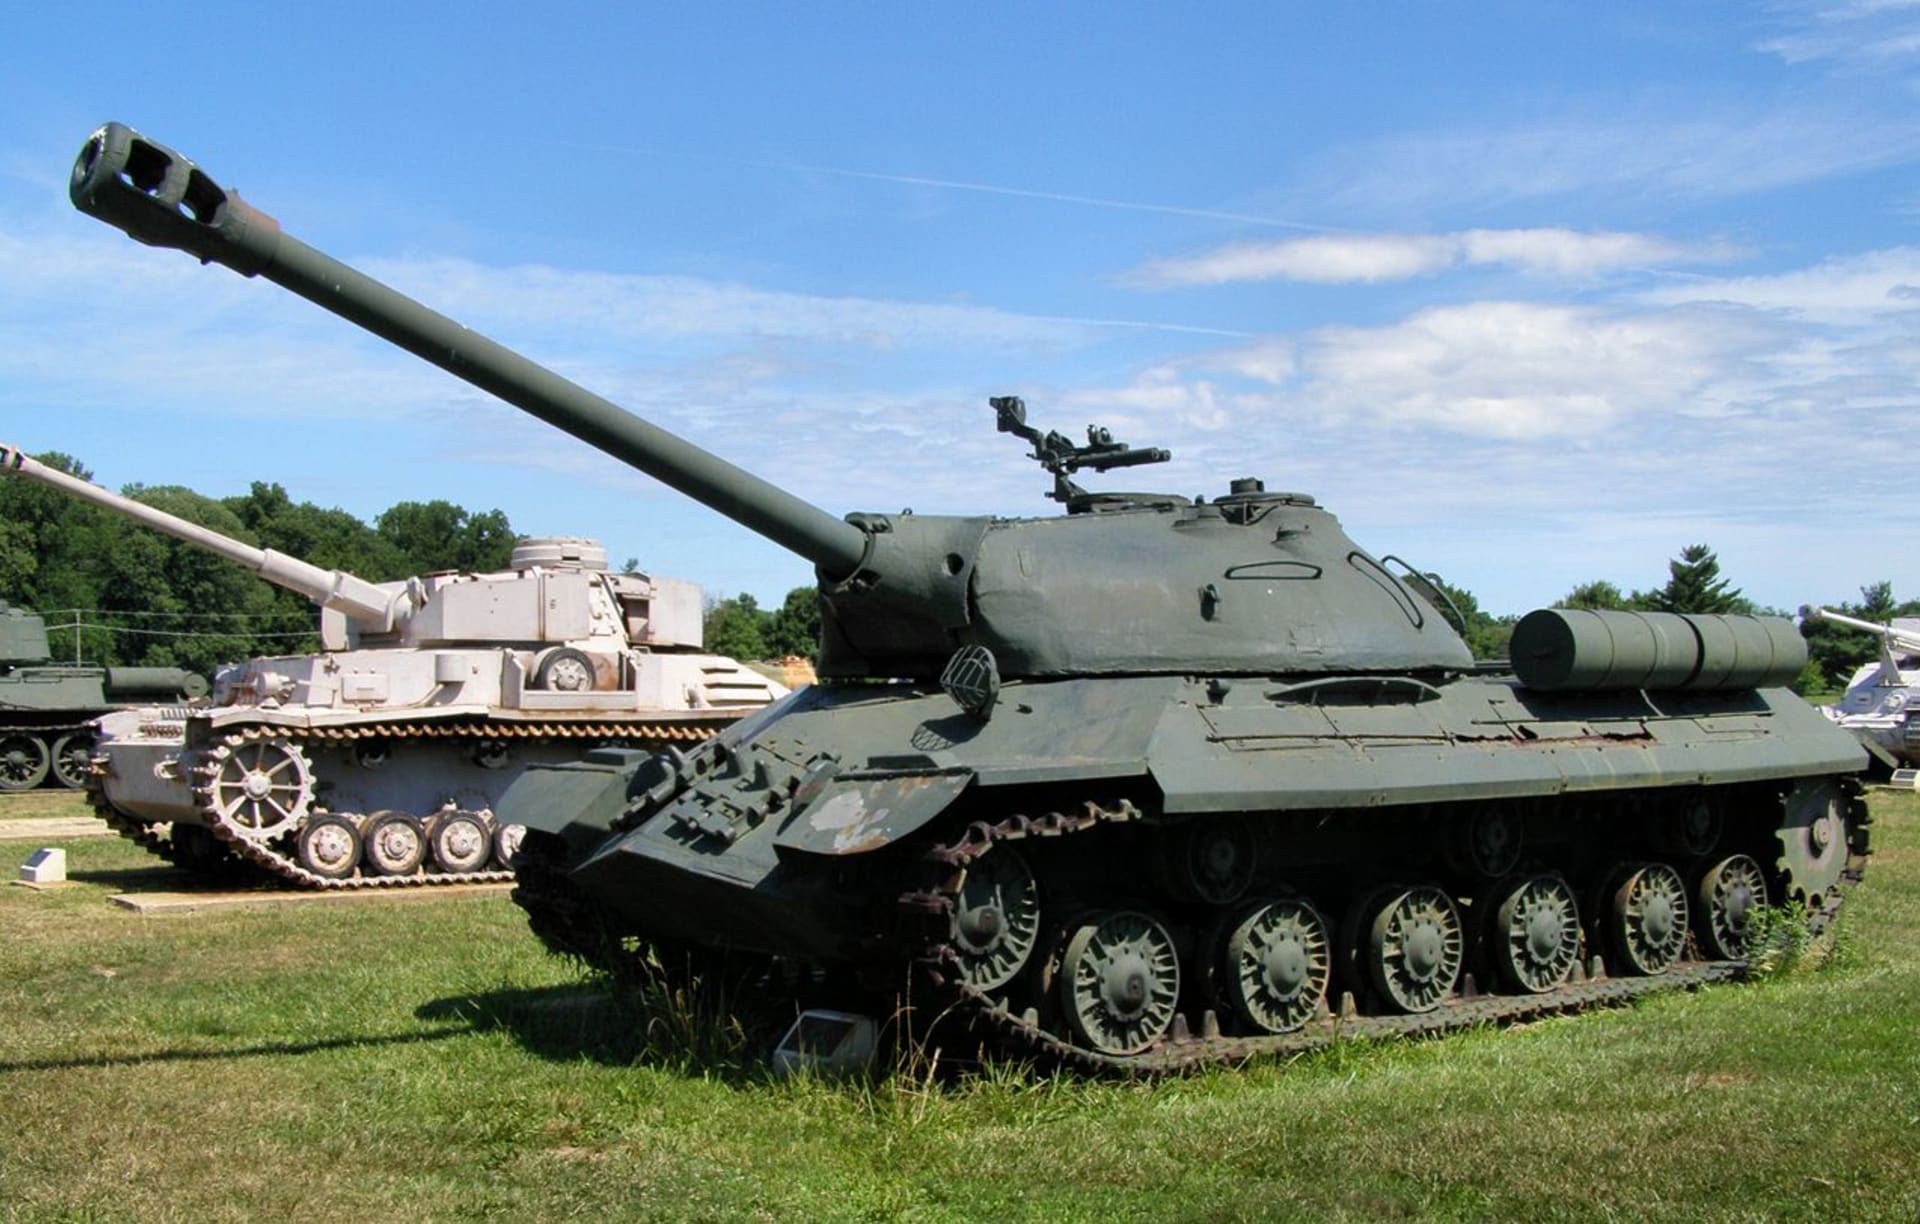 IS-3 významně ovlivnil vývoj těžkých tanků v poválečném Sovětském svazu